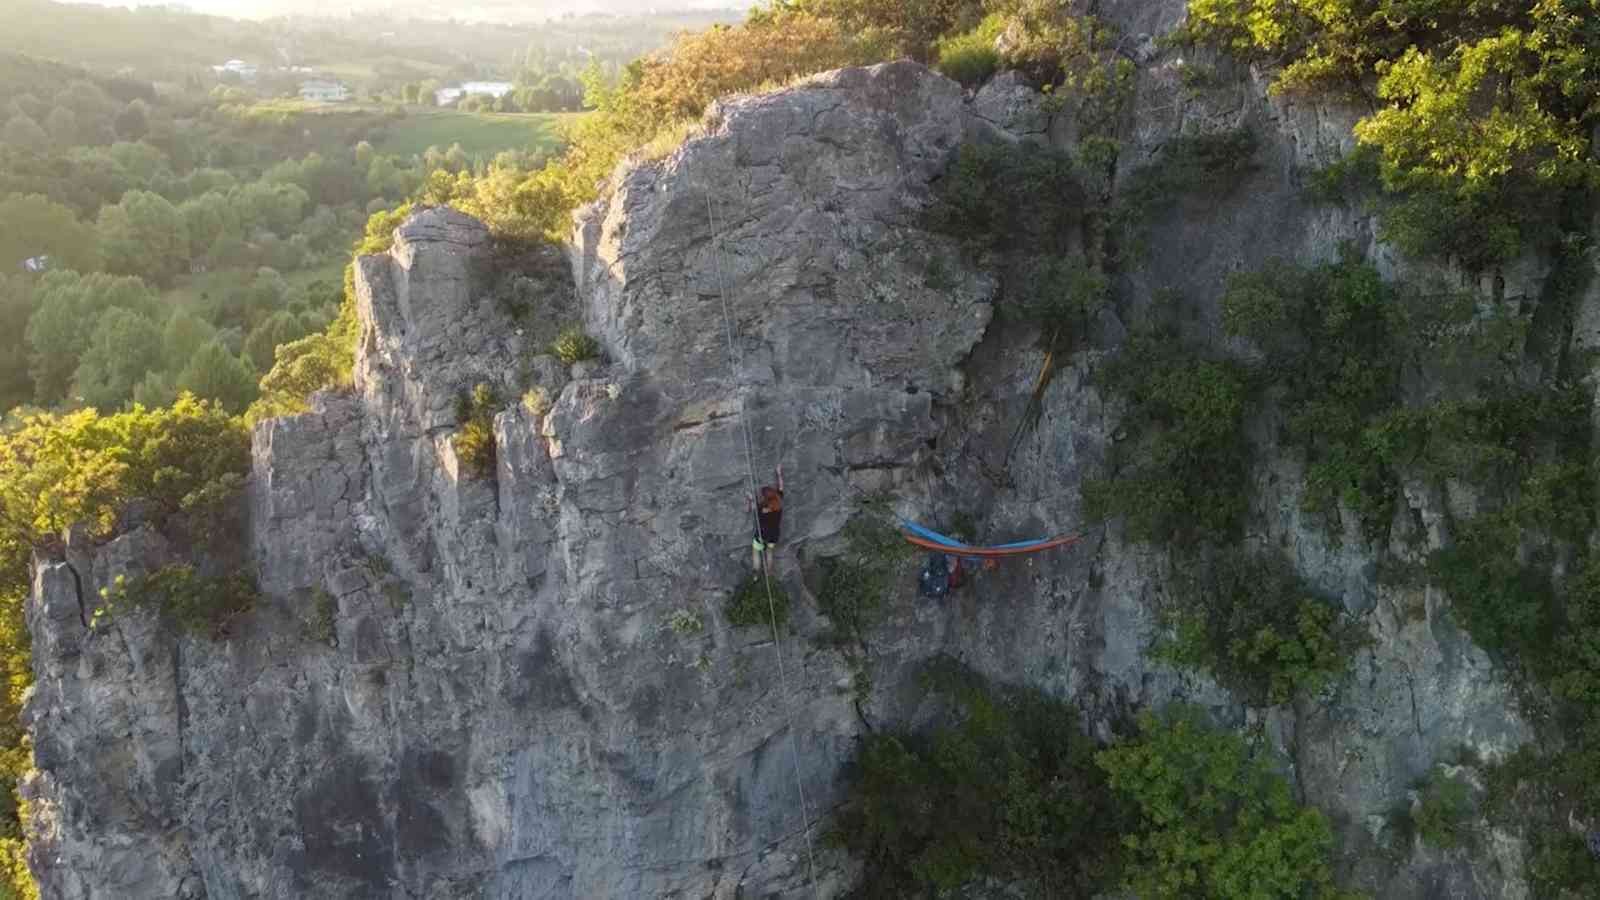 Yalovalı ekstrem dağcılık sporcusu 2 arkadaş, yüksek kayalıklarda yerden 100 metre yükseklikte kurdukları hamak üzerinde 1 gecelik kamp yaptılar ...